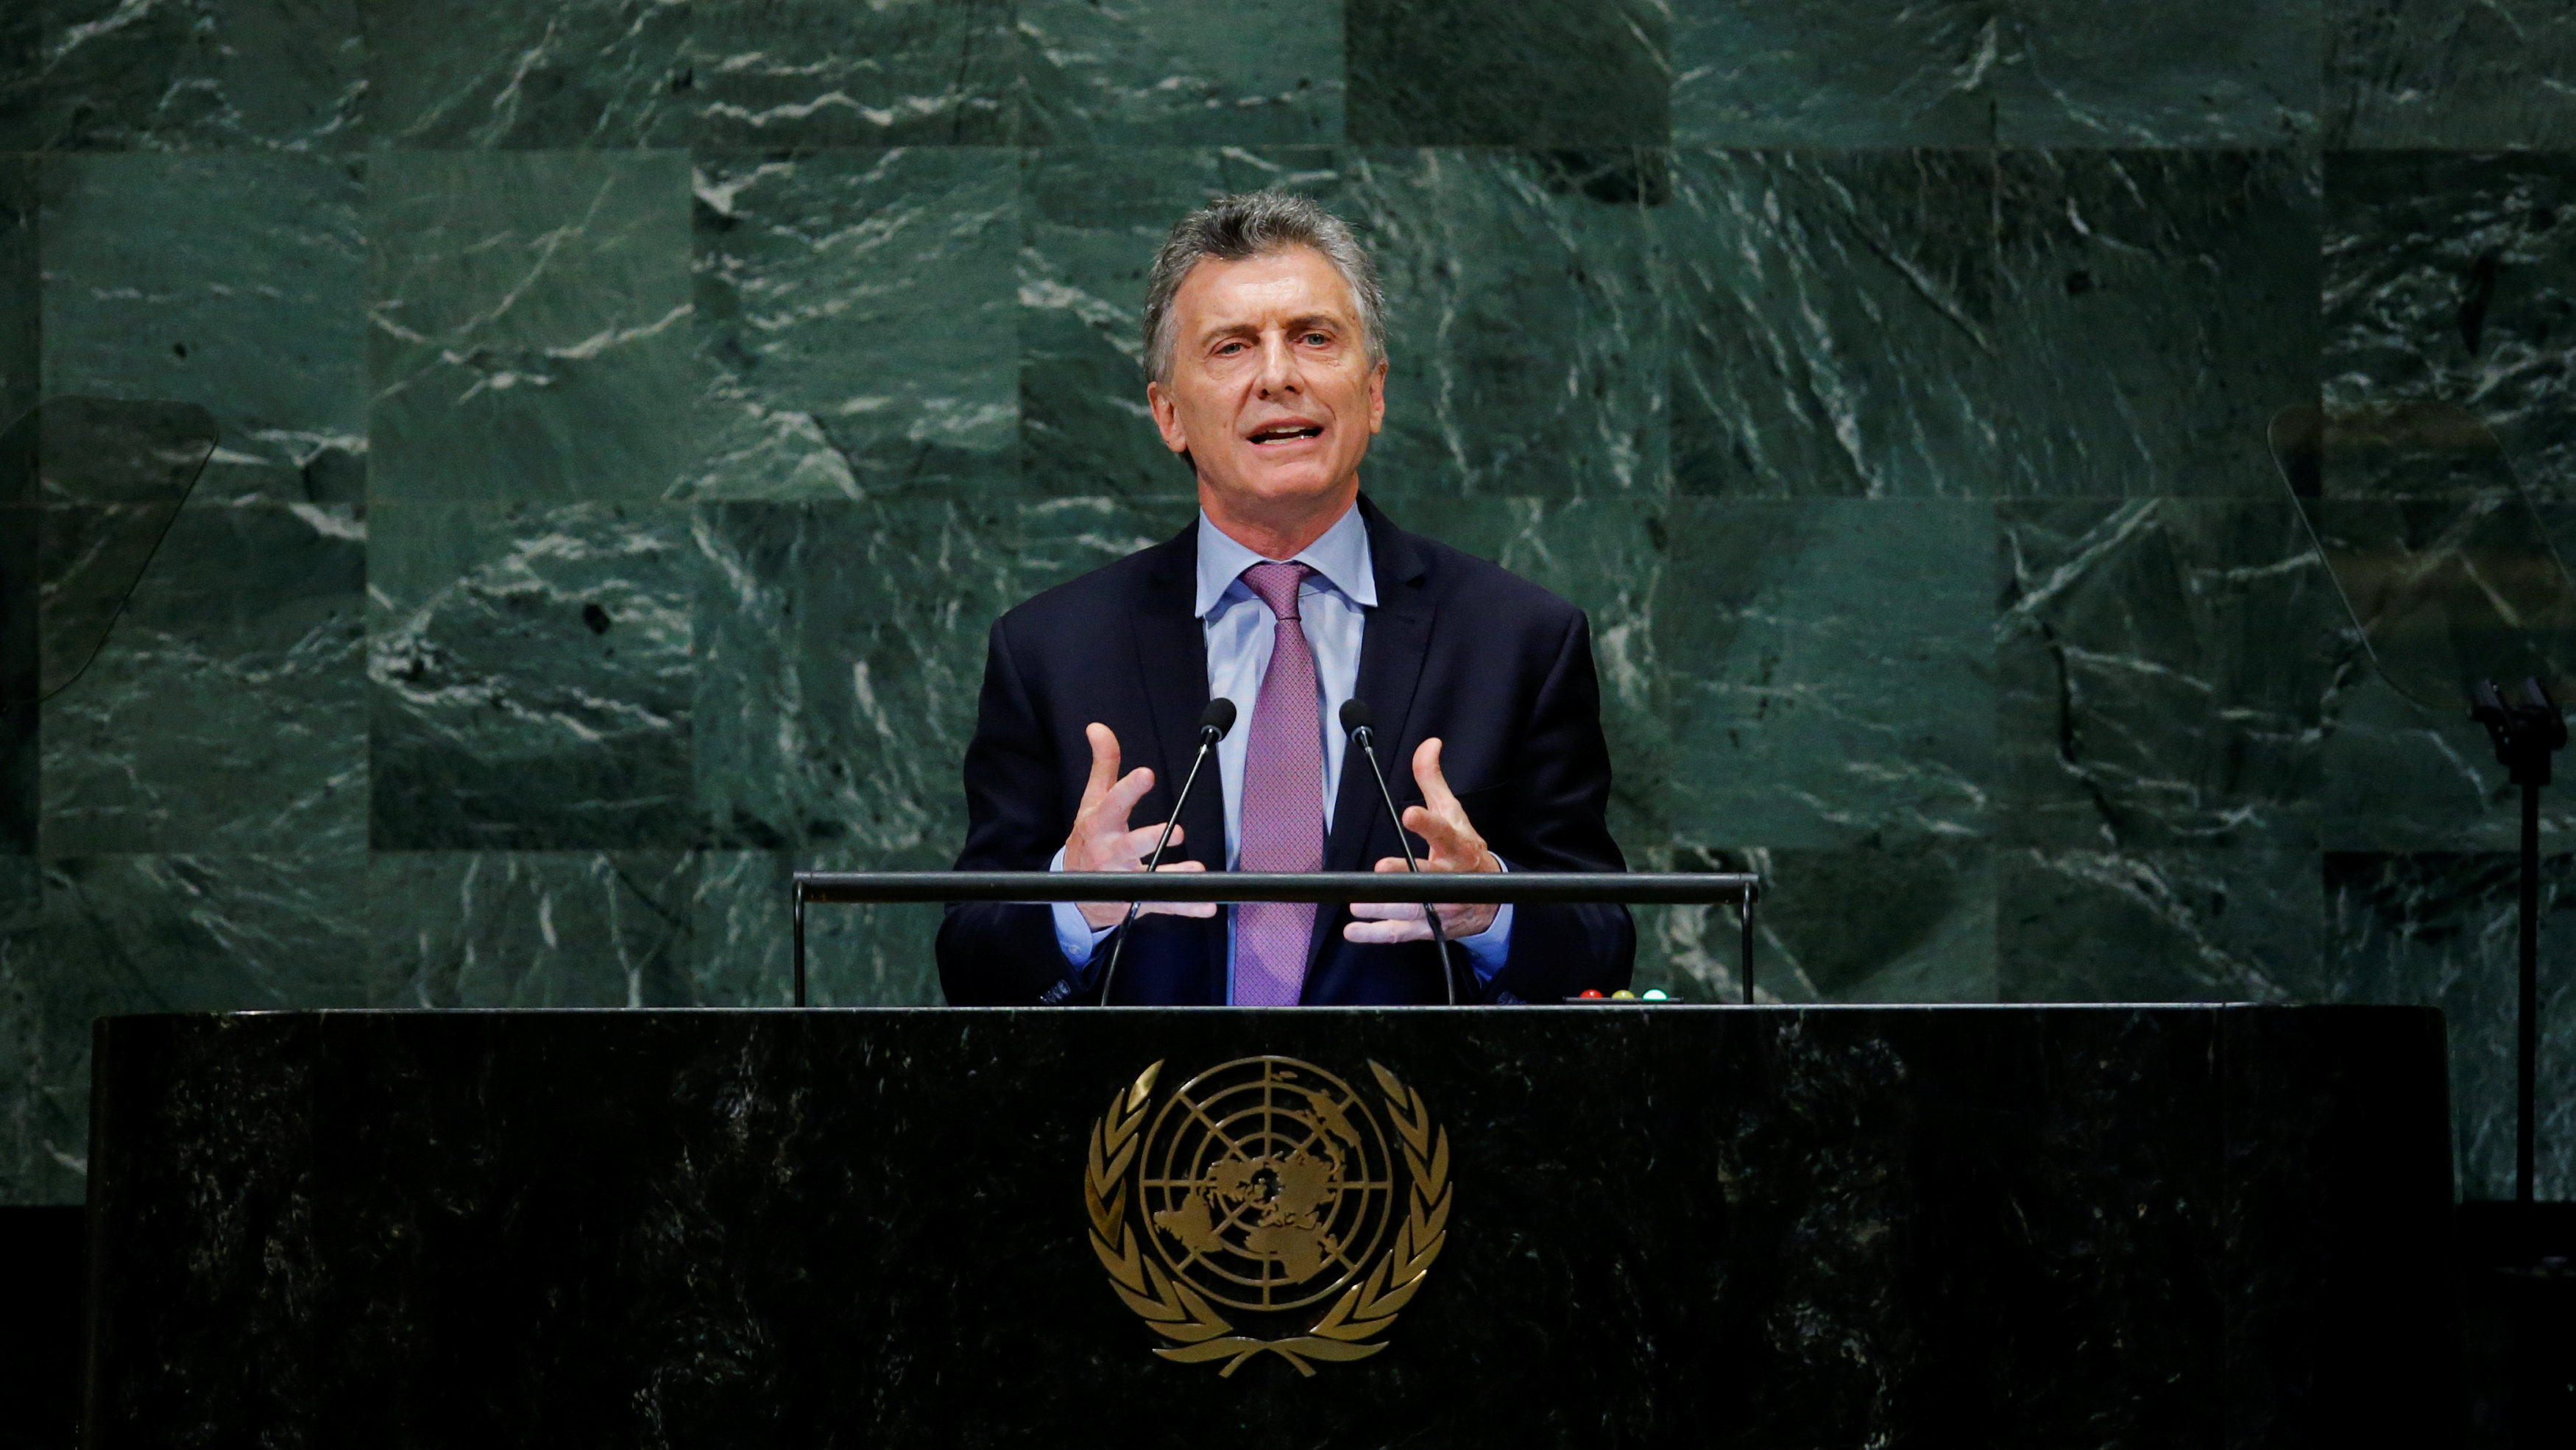 El presidente de Argentina, Mauricio Macri, aceptó que el país enfrenta grandes dificultades económicas y sociales.